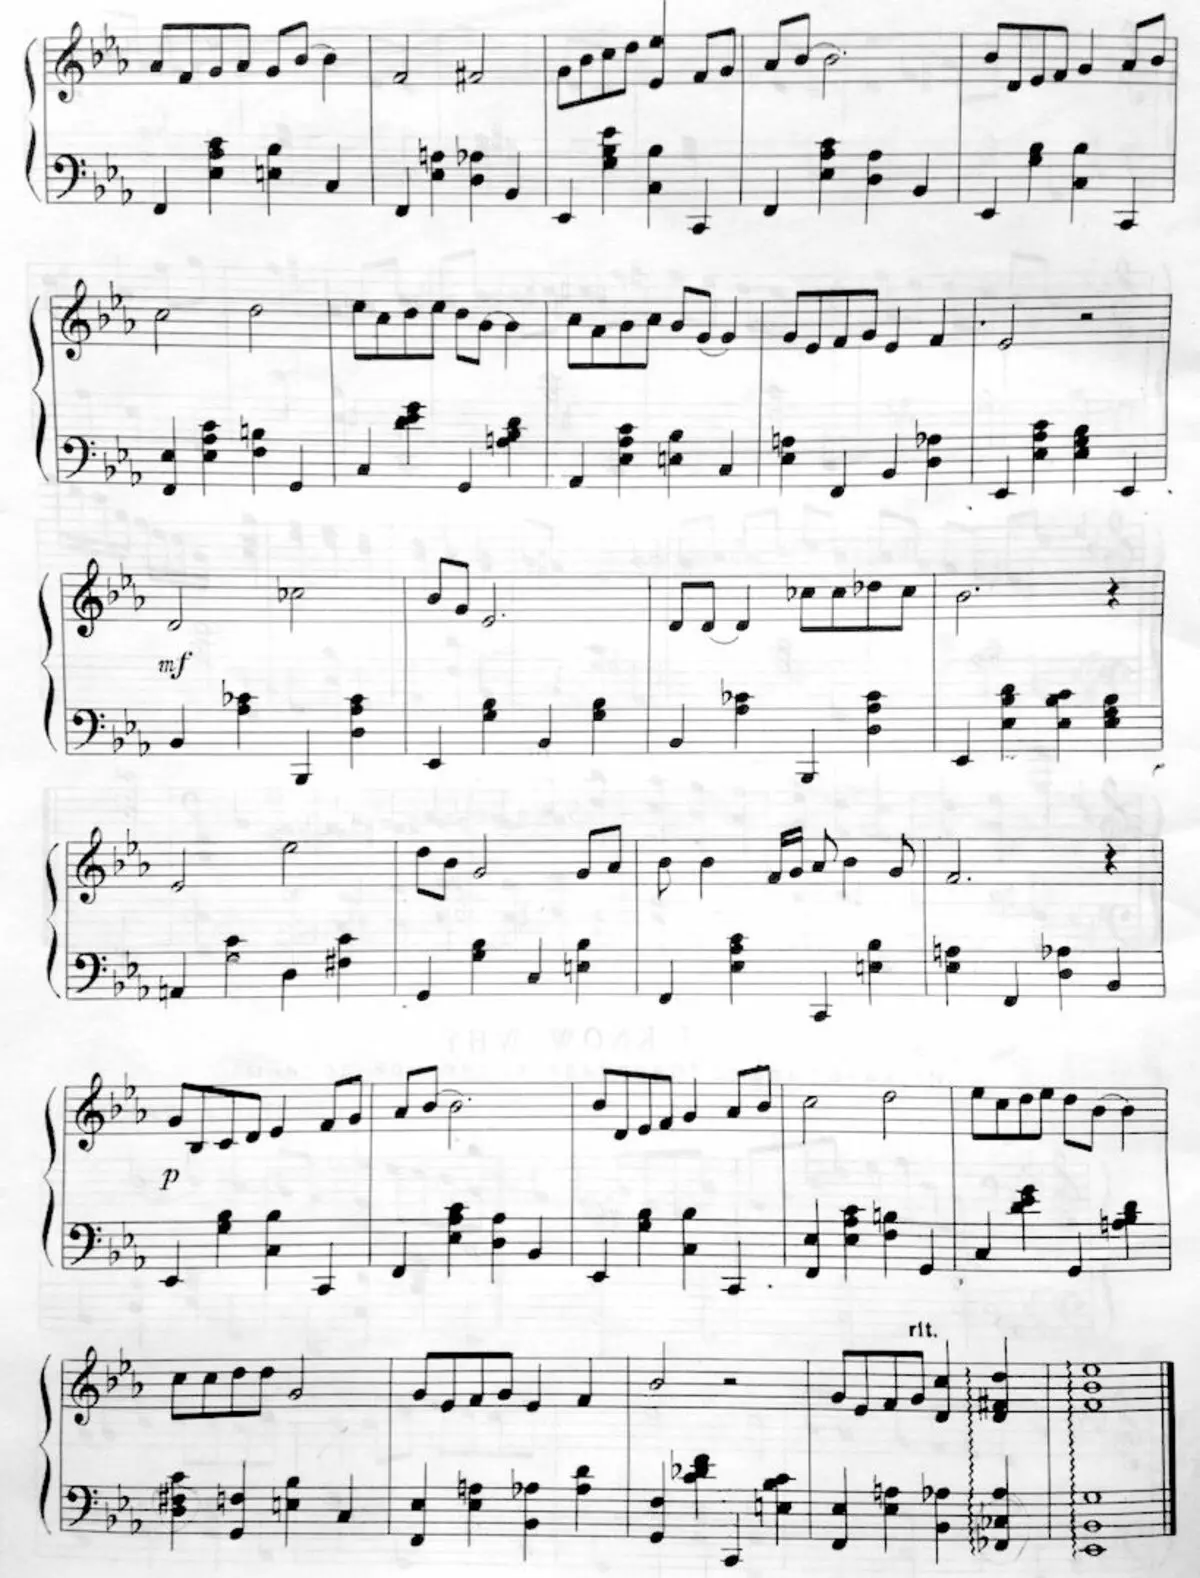 Јазз акорди за клавир: акорд секвенце на клавиру, основне прелепе акорде и сложене, њихово декодирање 25486_11